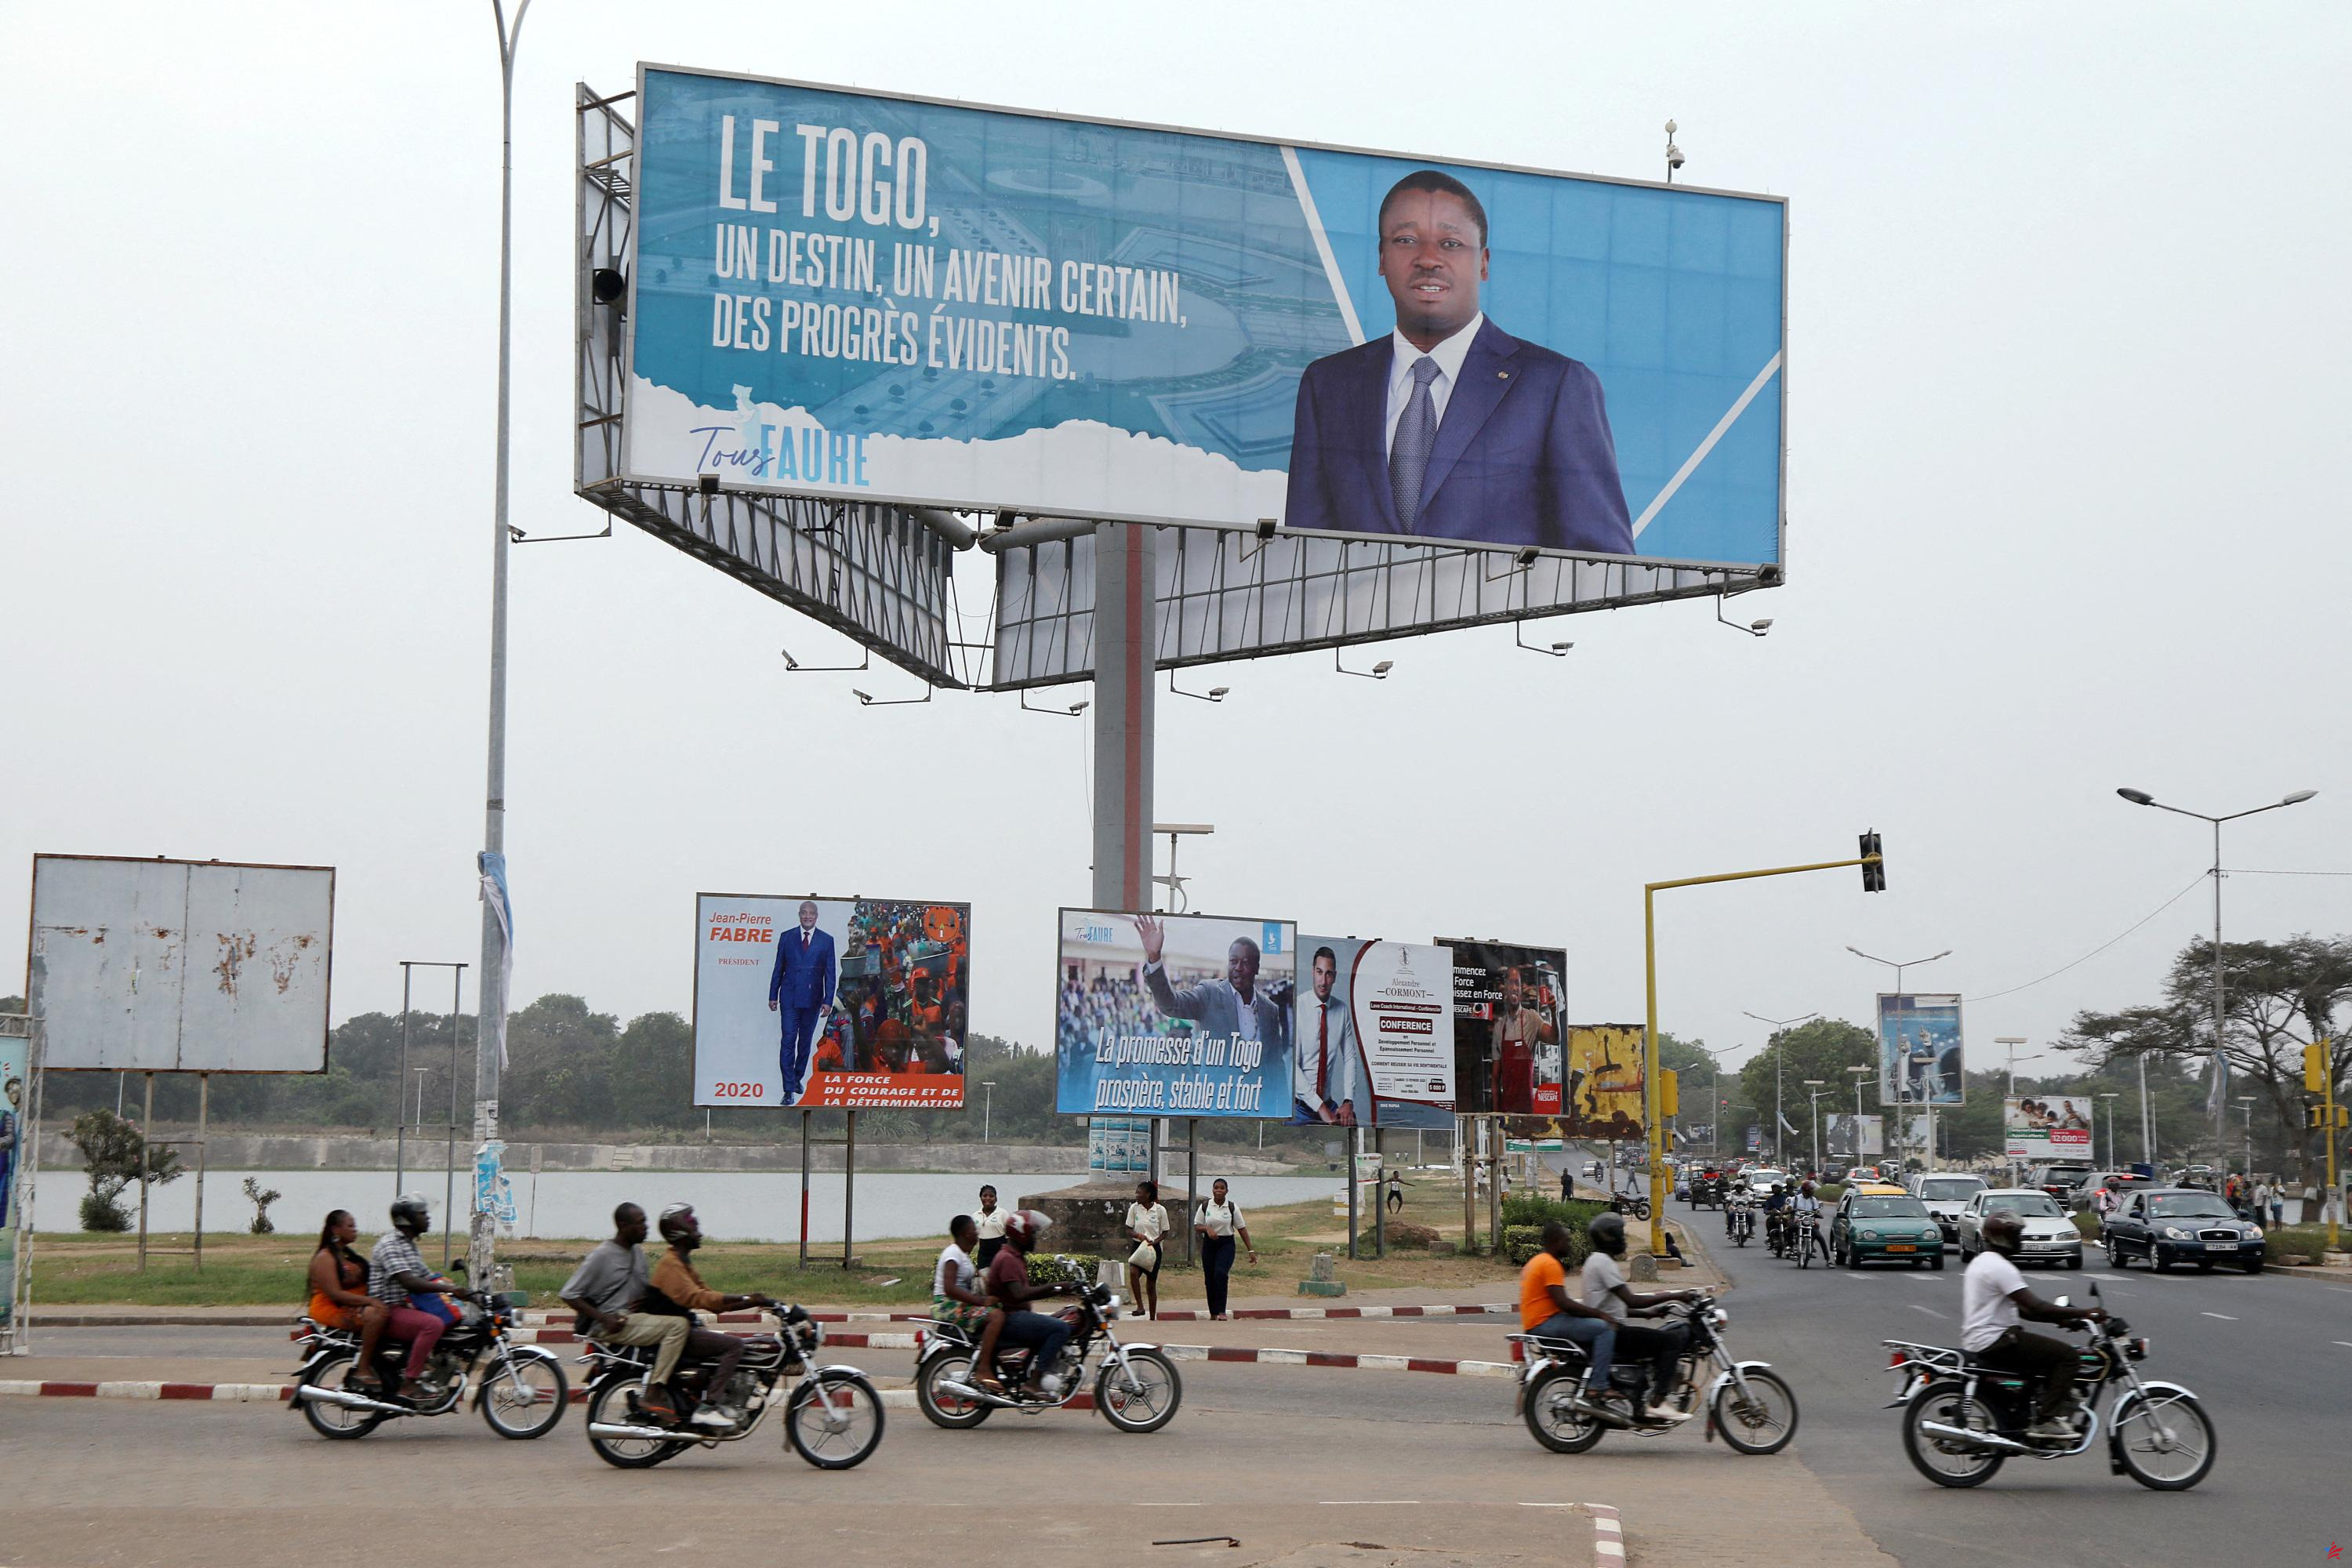 Togo: la CEDEAO envía una delegación en un contexto de tensiones políticas